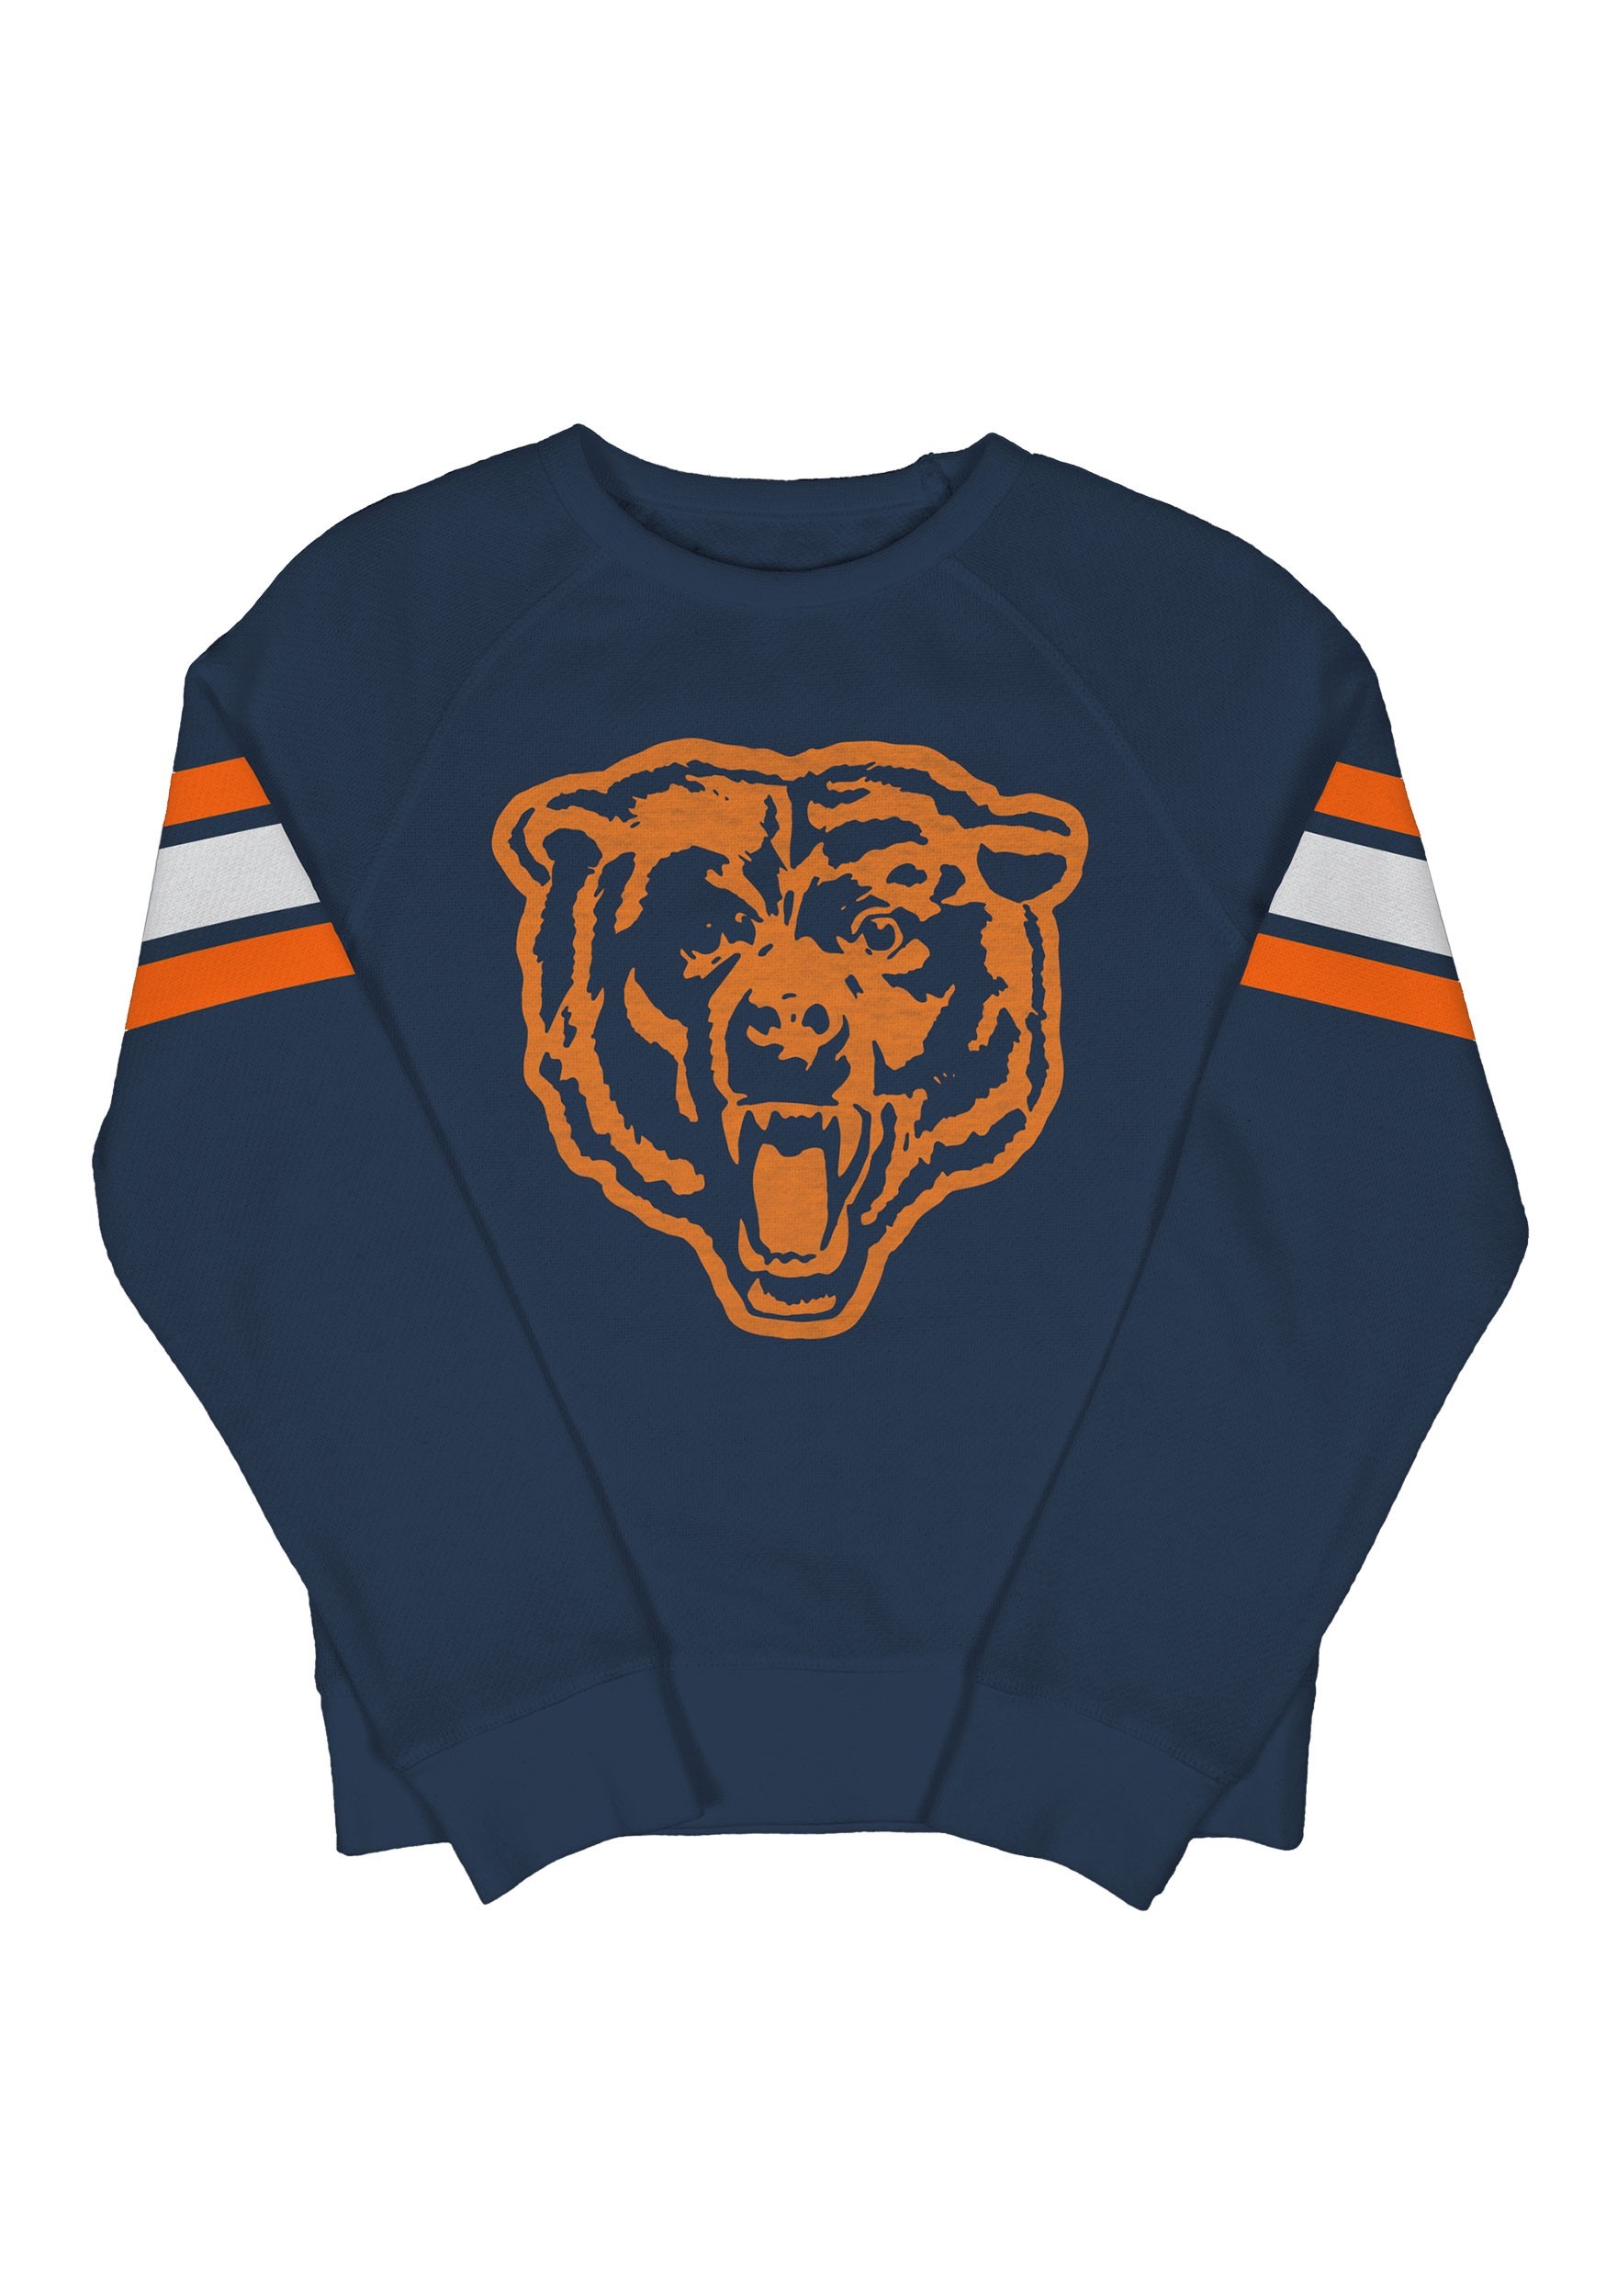 Chicago Bears Kids Fleece Navy Crewneck Sweater